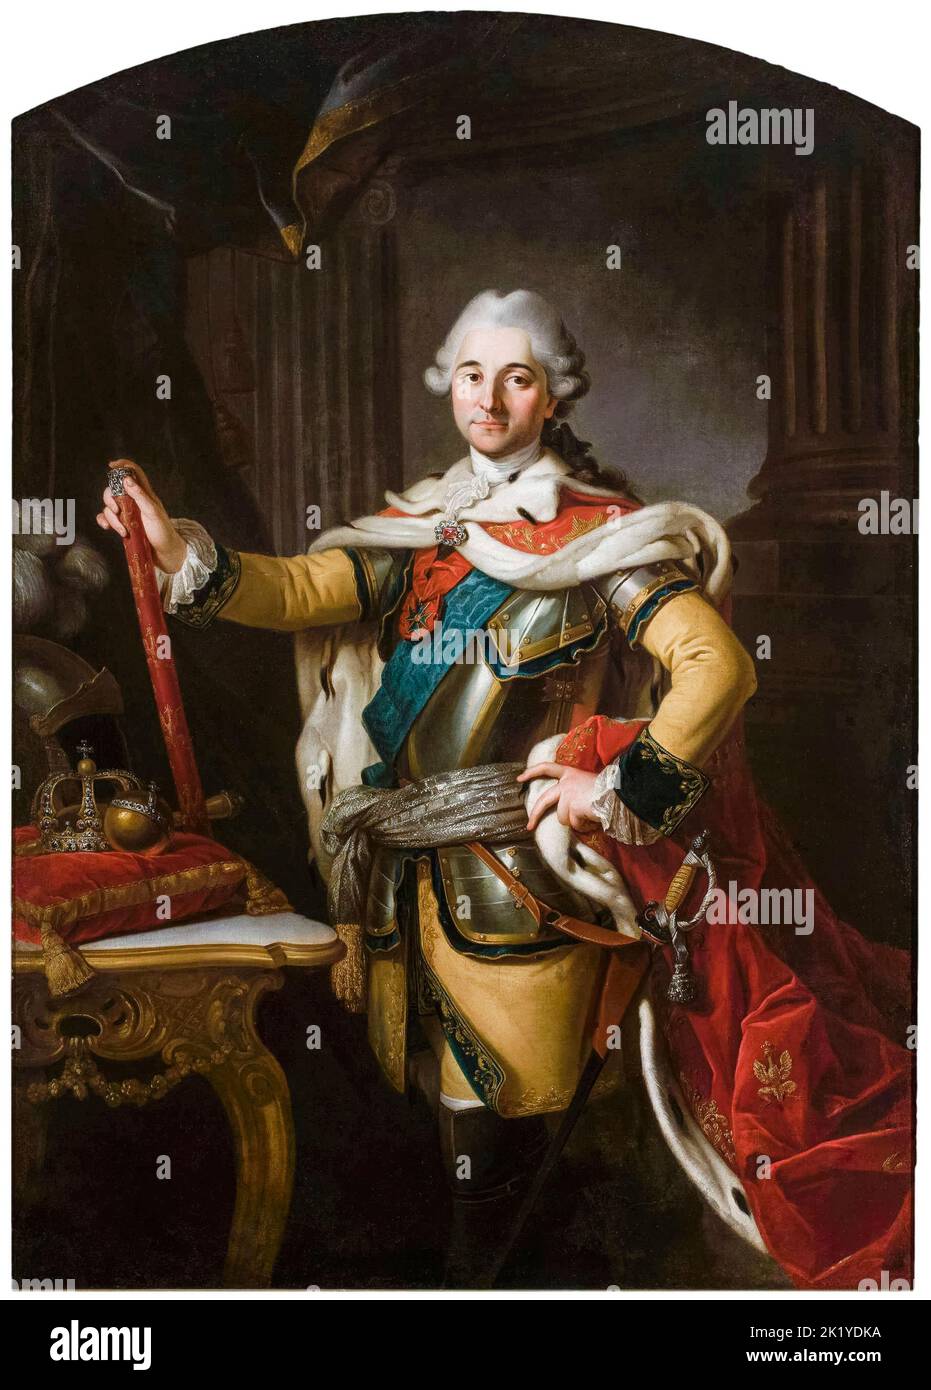 Stanisław II Augustus (1732-1798), roi de Pologne et grand-duc de Lituanie (1764-1795), portrait peint à l'huile sur toile par Per Krafft l'ancien, vers 1767 Banque D'Images